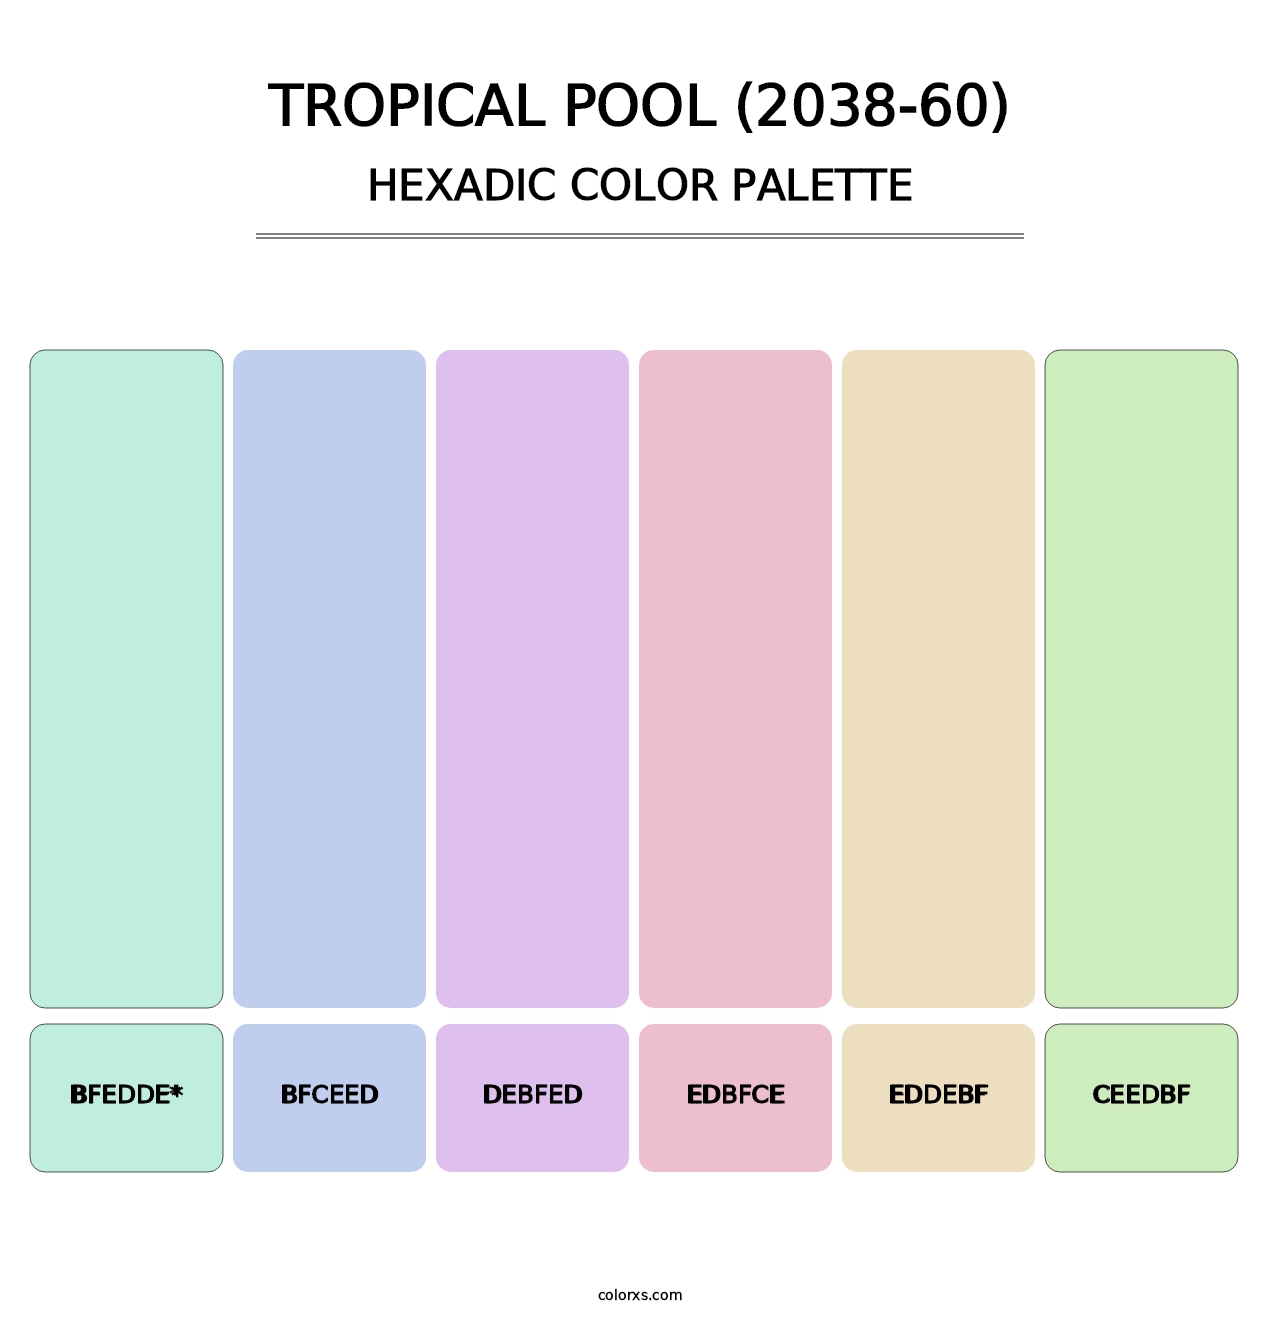 Tropical Pool (2038-60) - Hexadic Color Palette